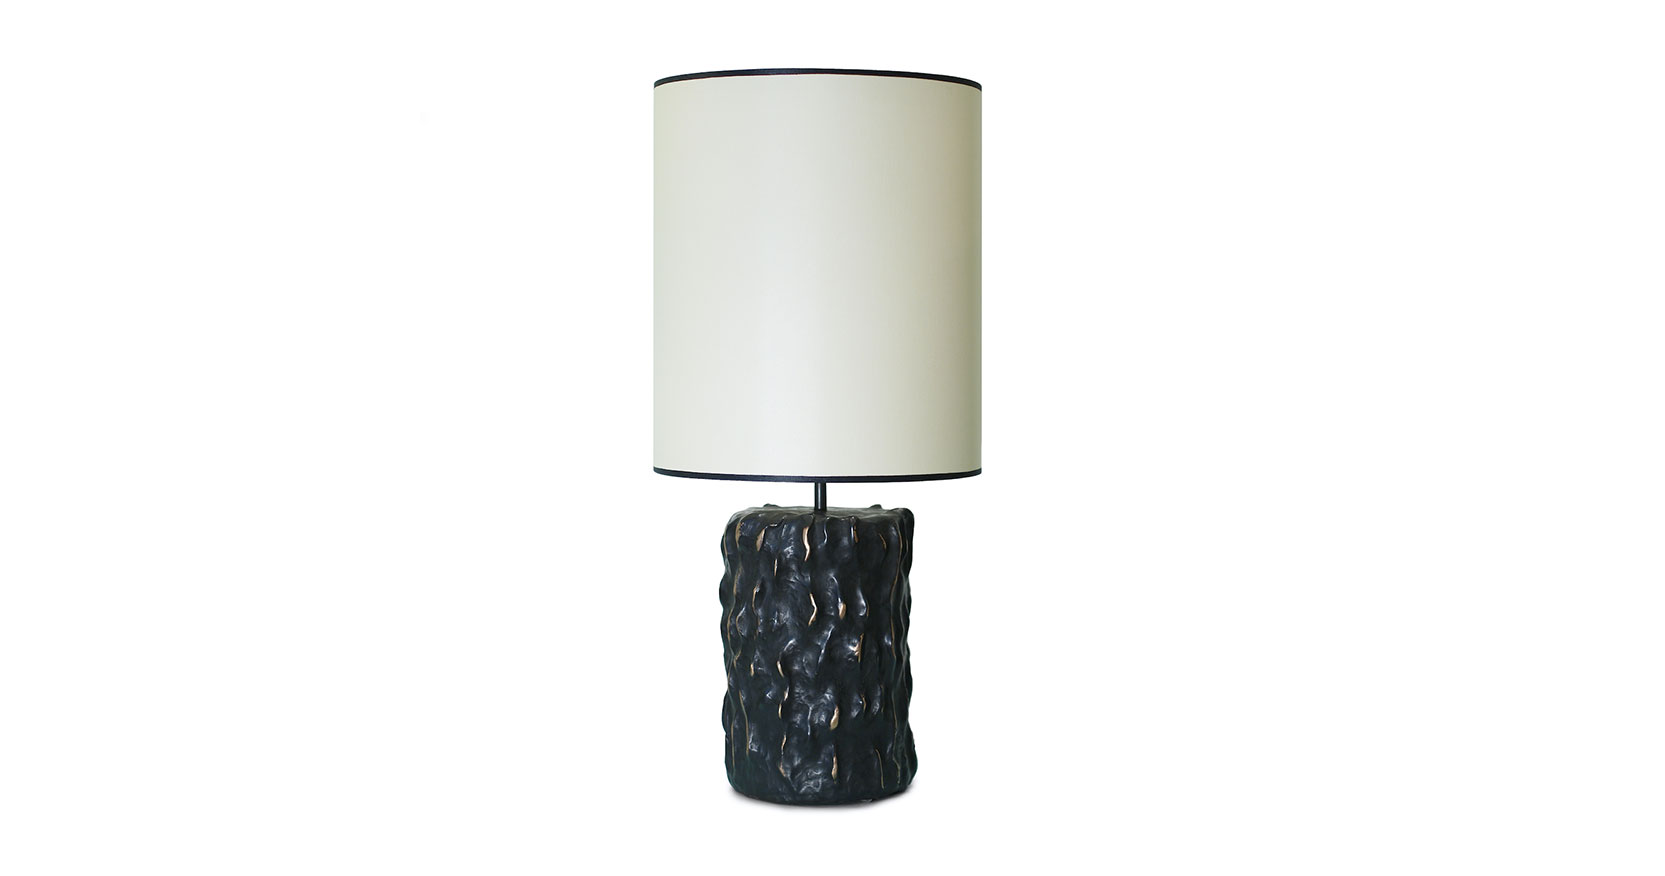 lampe elizabeth garouste - elizabeth garouste - lampe bronze - design de collection - édition limitée - élisabeth garouste